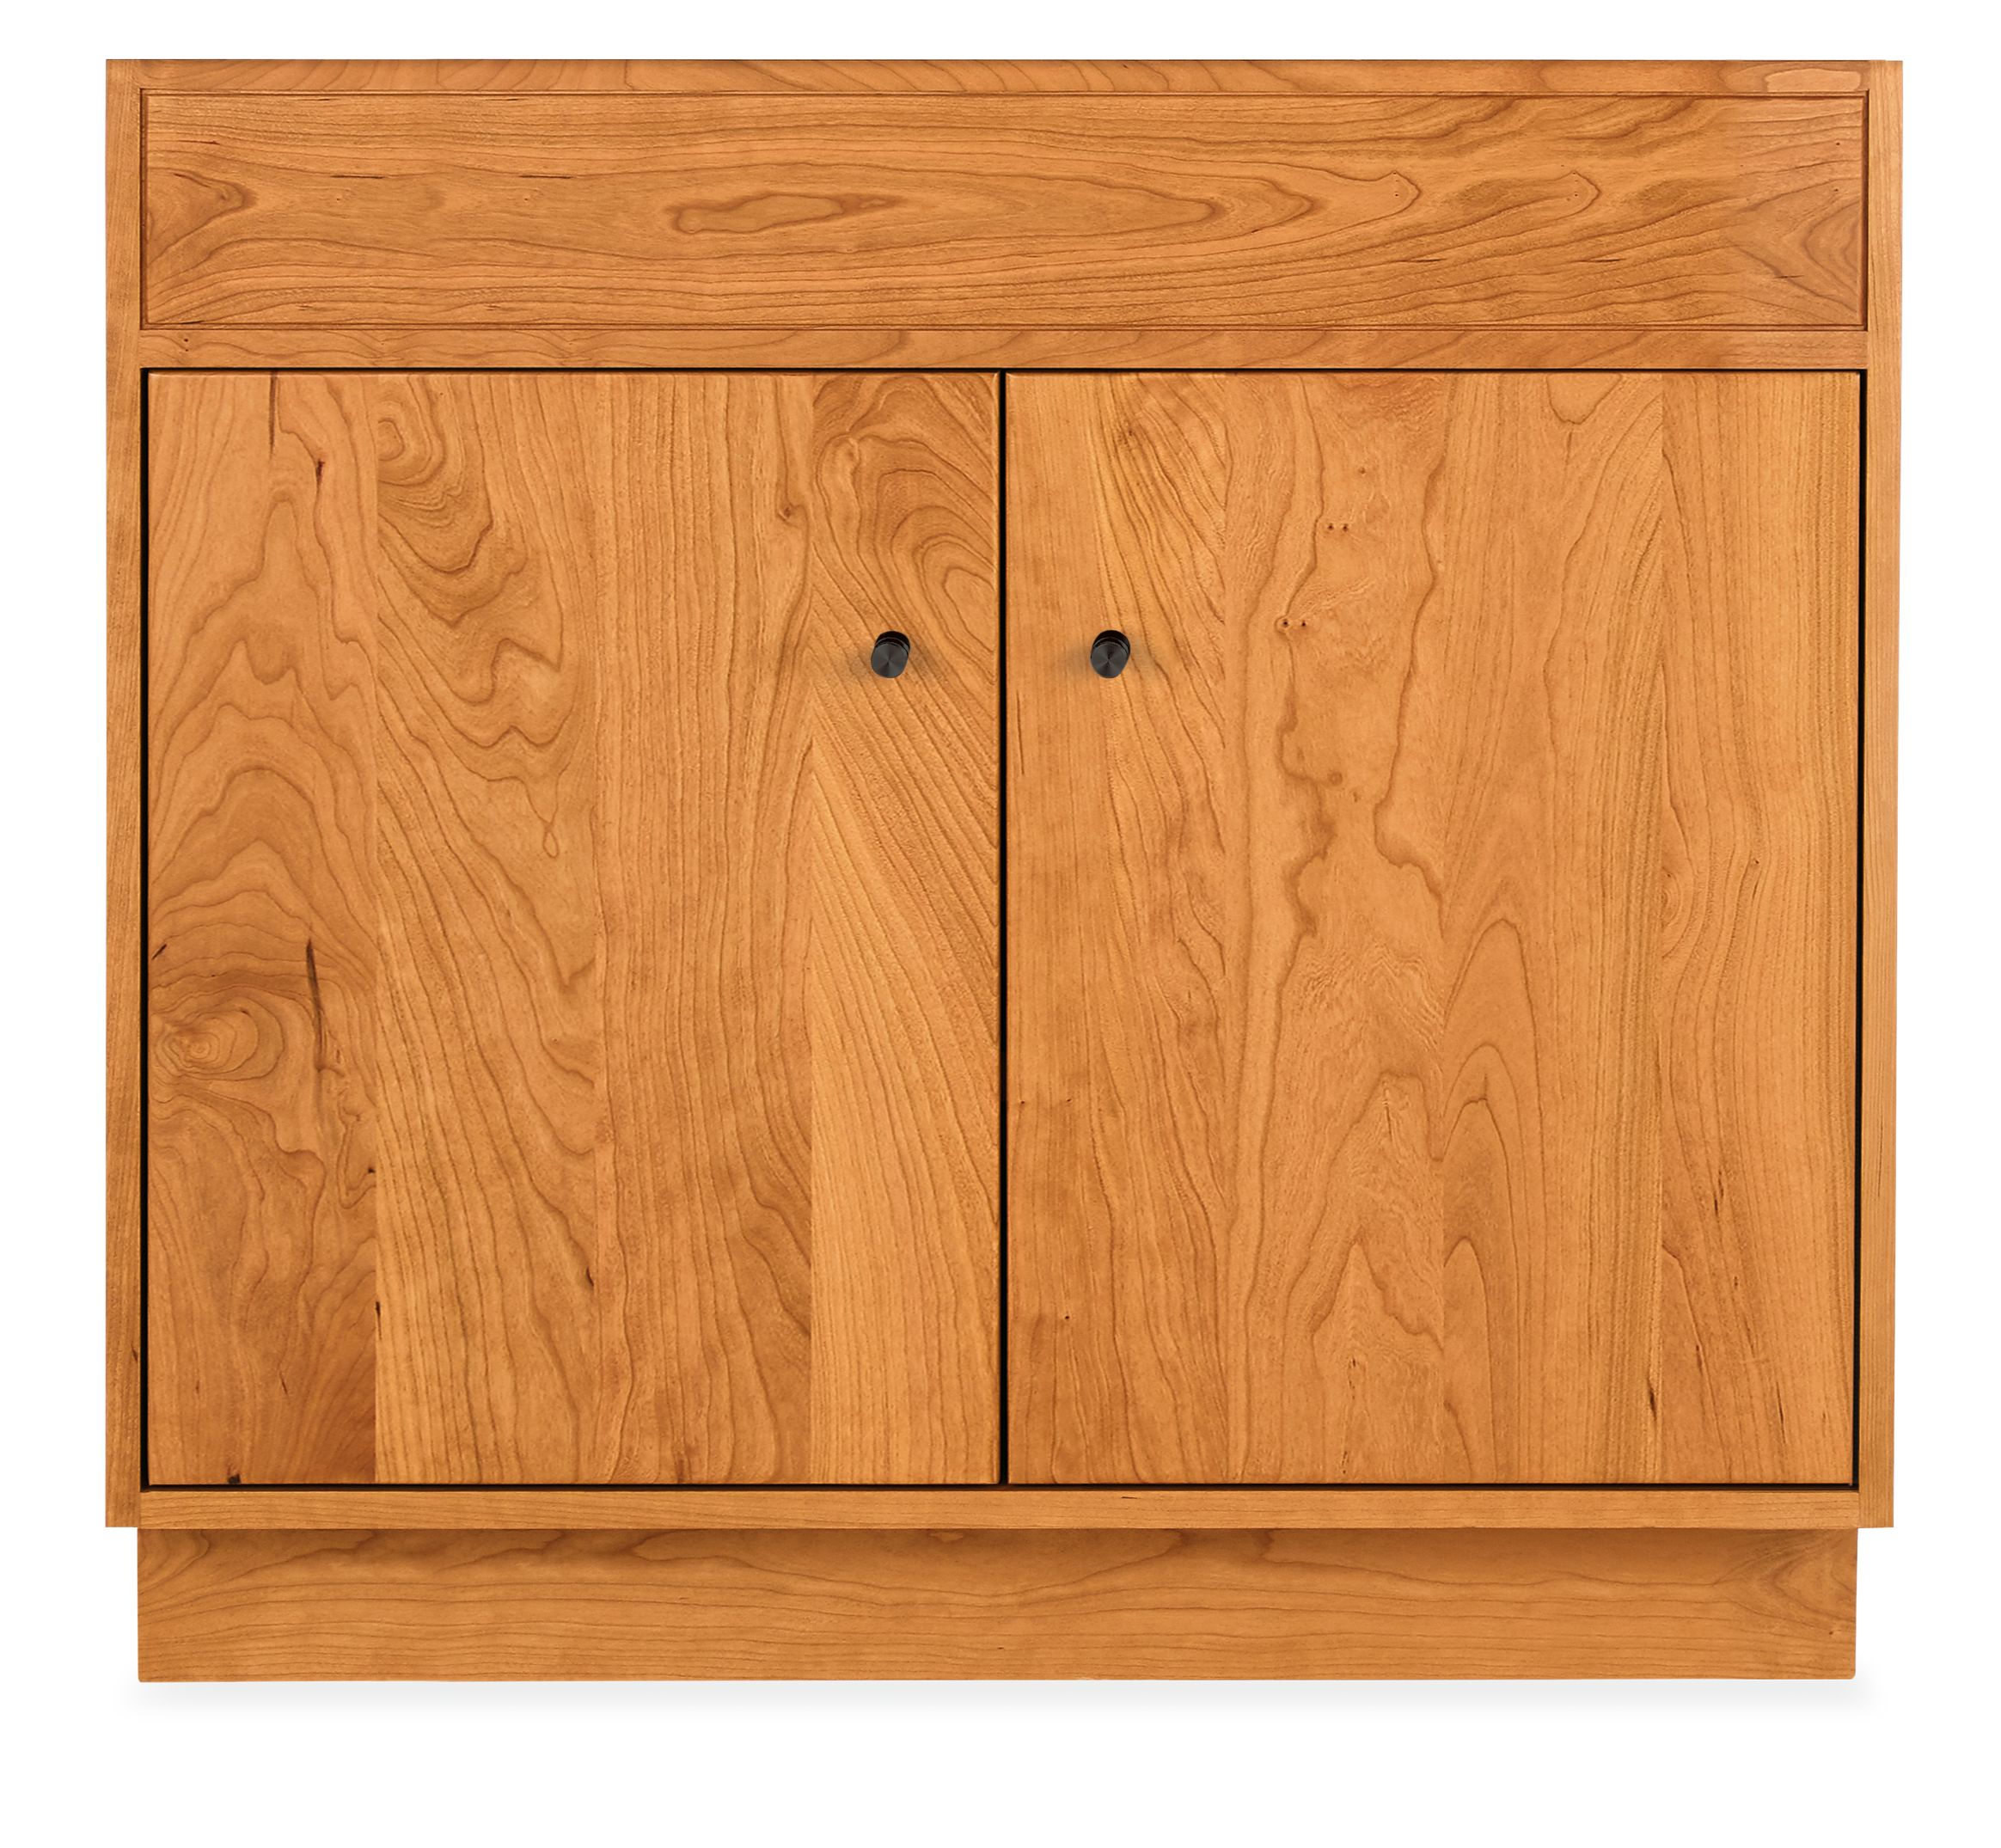 Linear Wood Base Bathroom Vanity, Solid Wood Vanity Cabinet